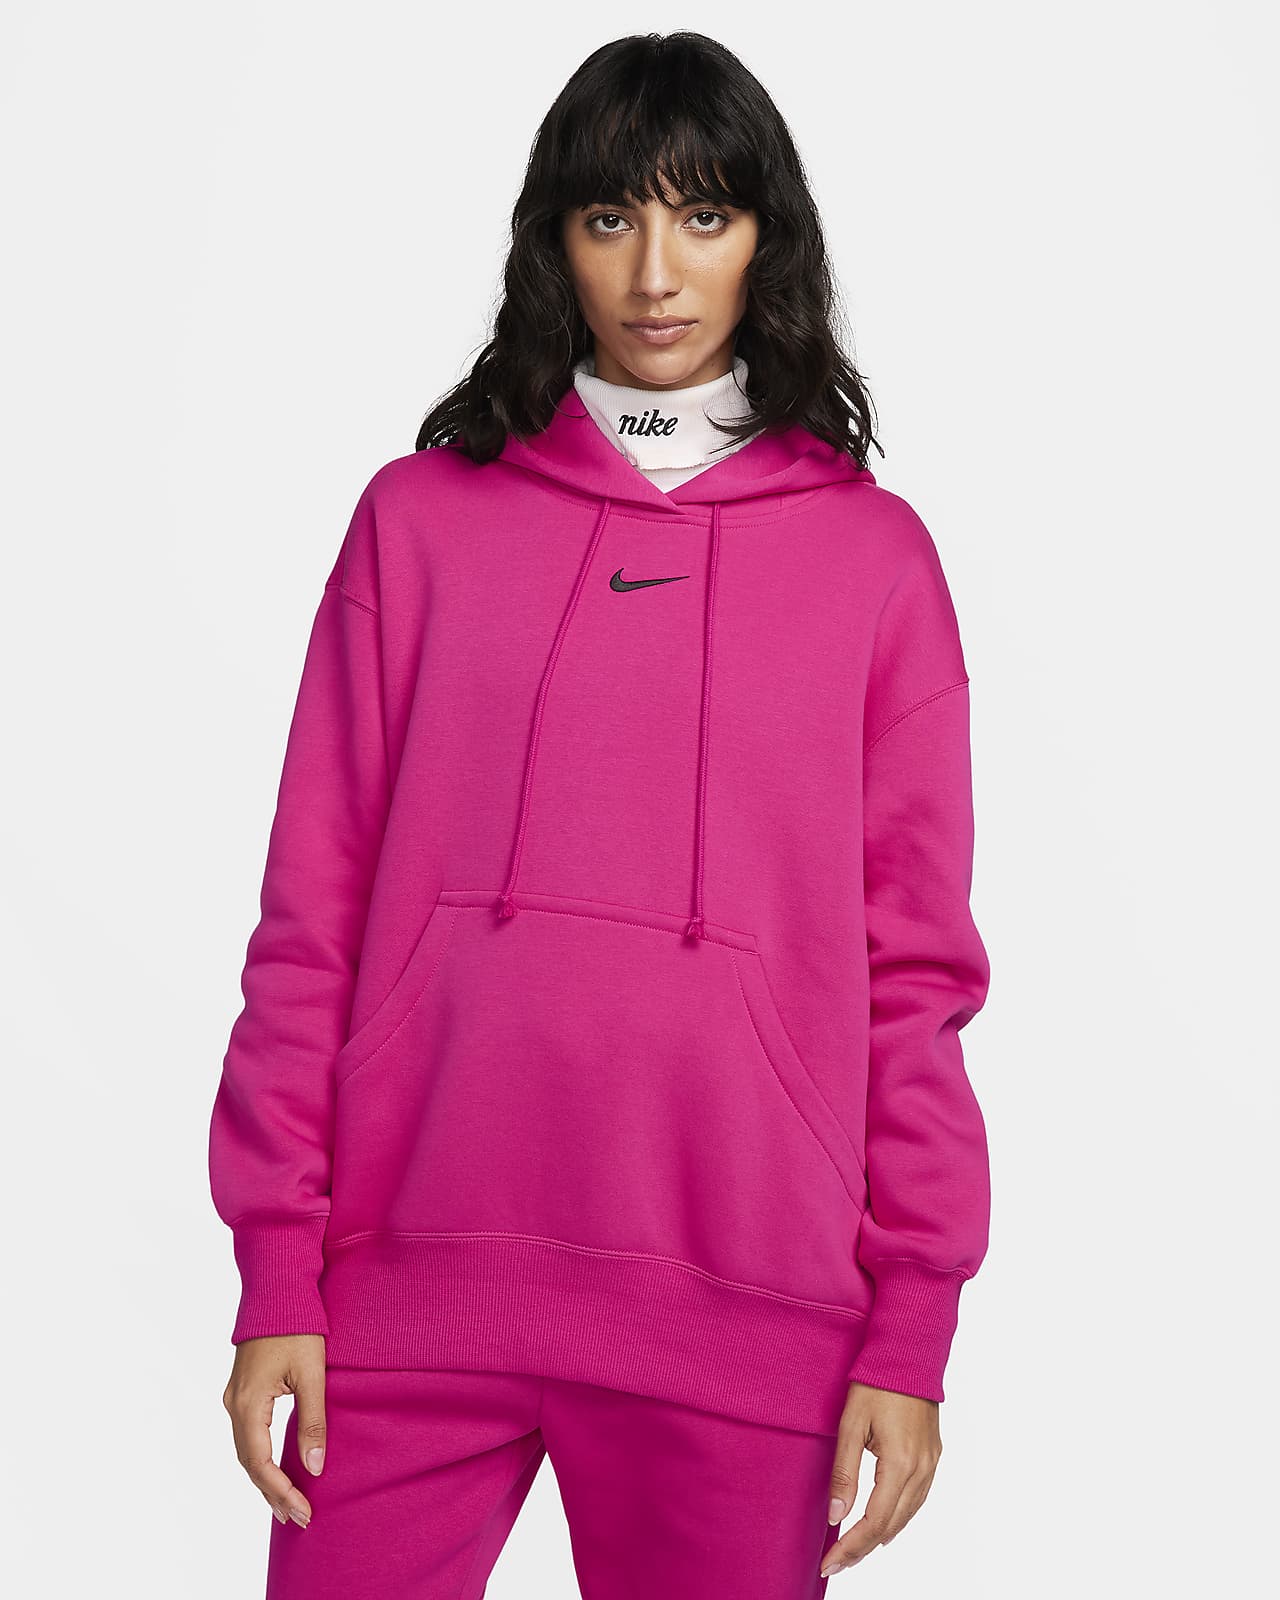 Nike Sportswear Women's Oversized Jersey Pullover Hoodie.